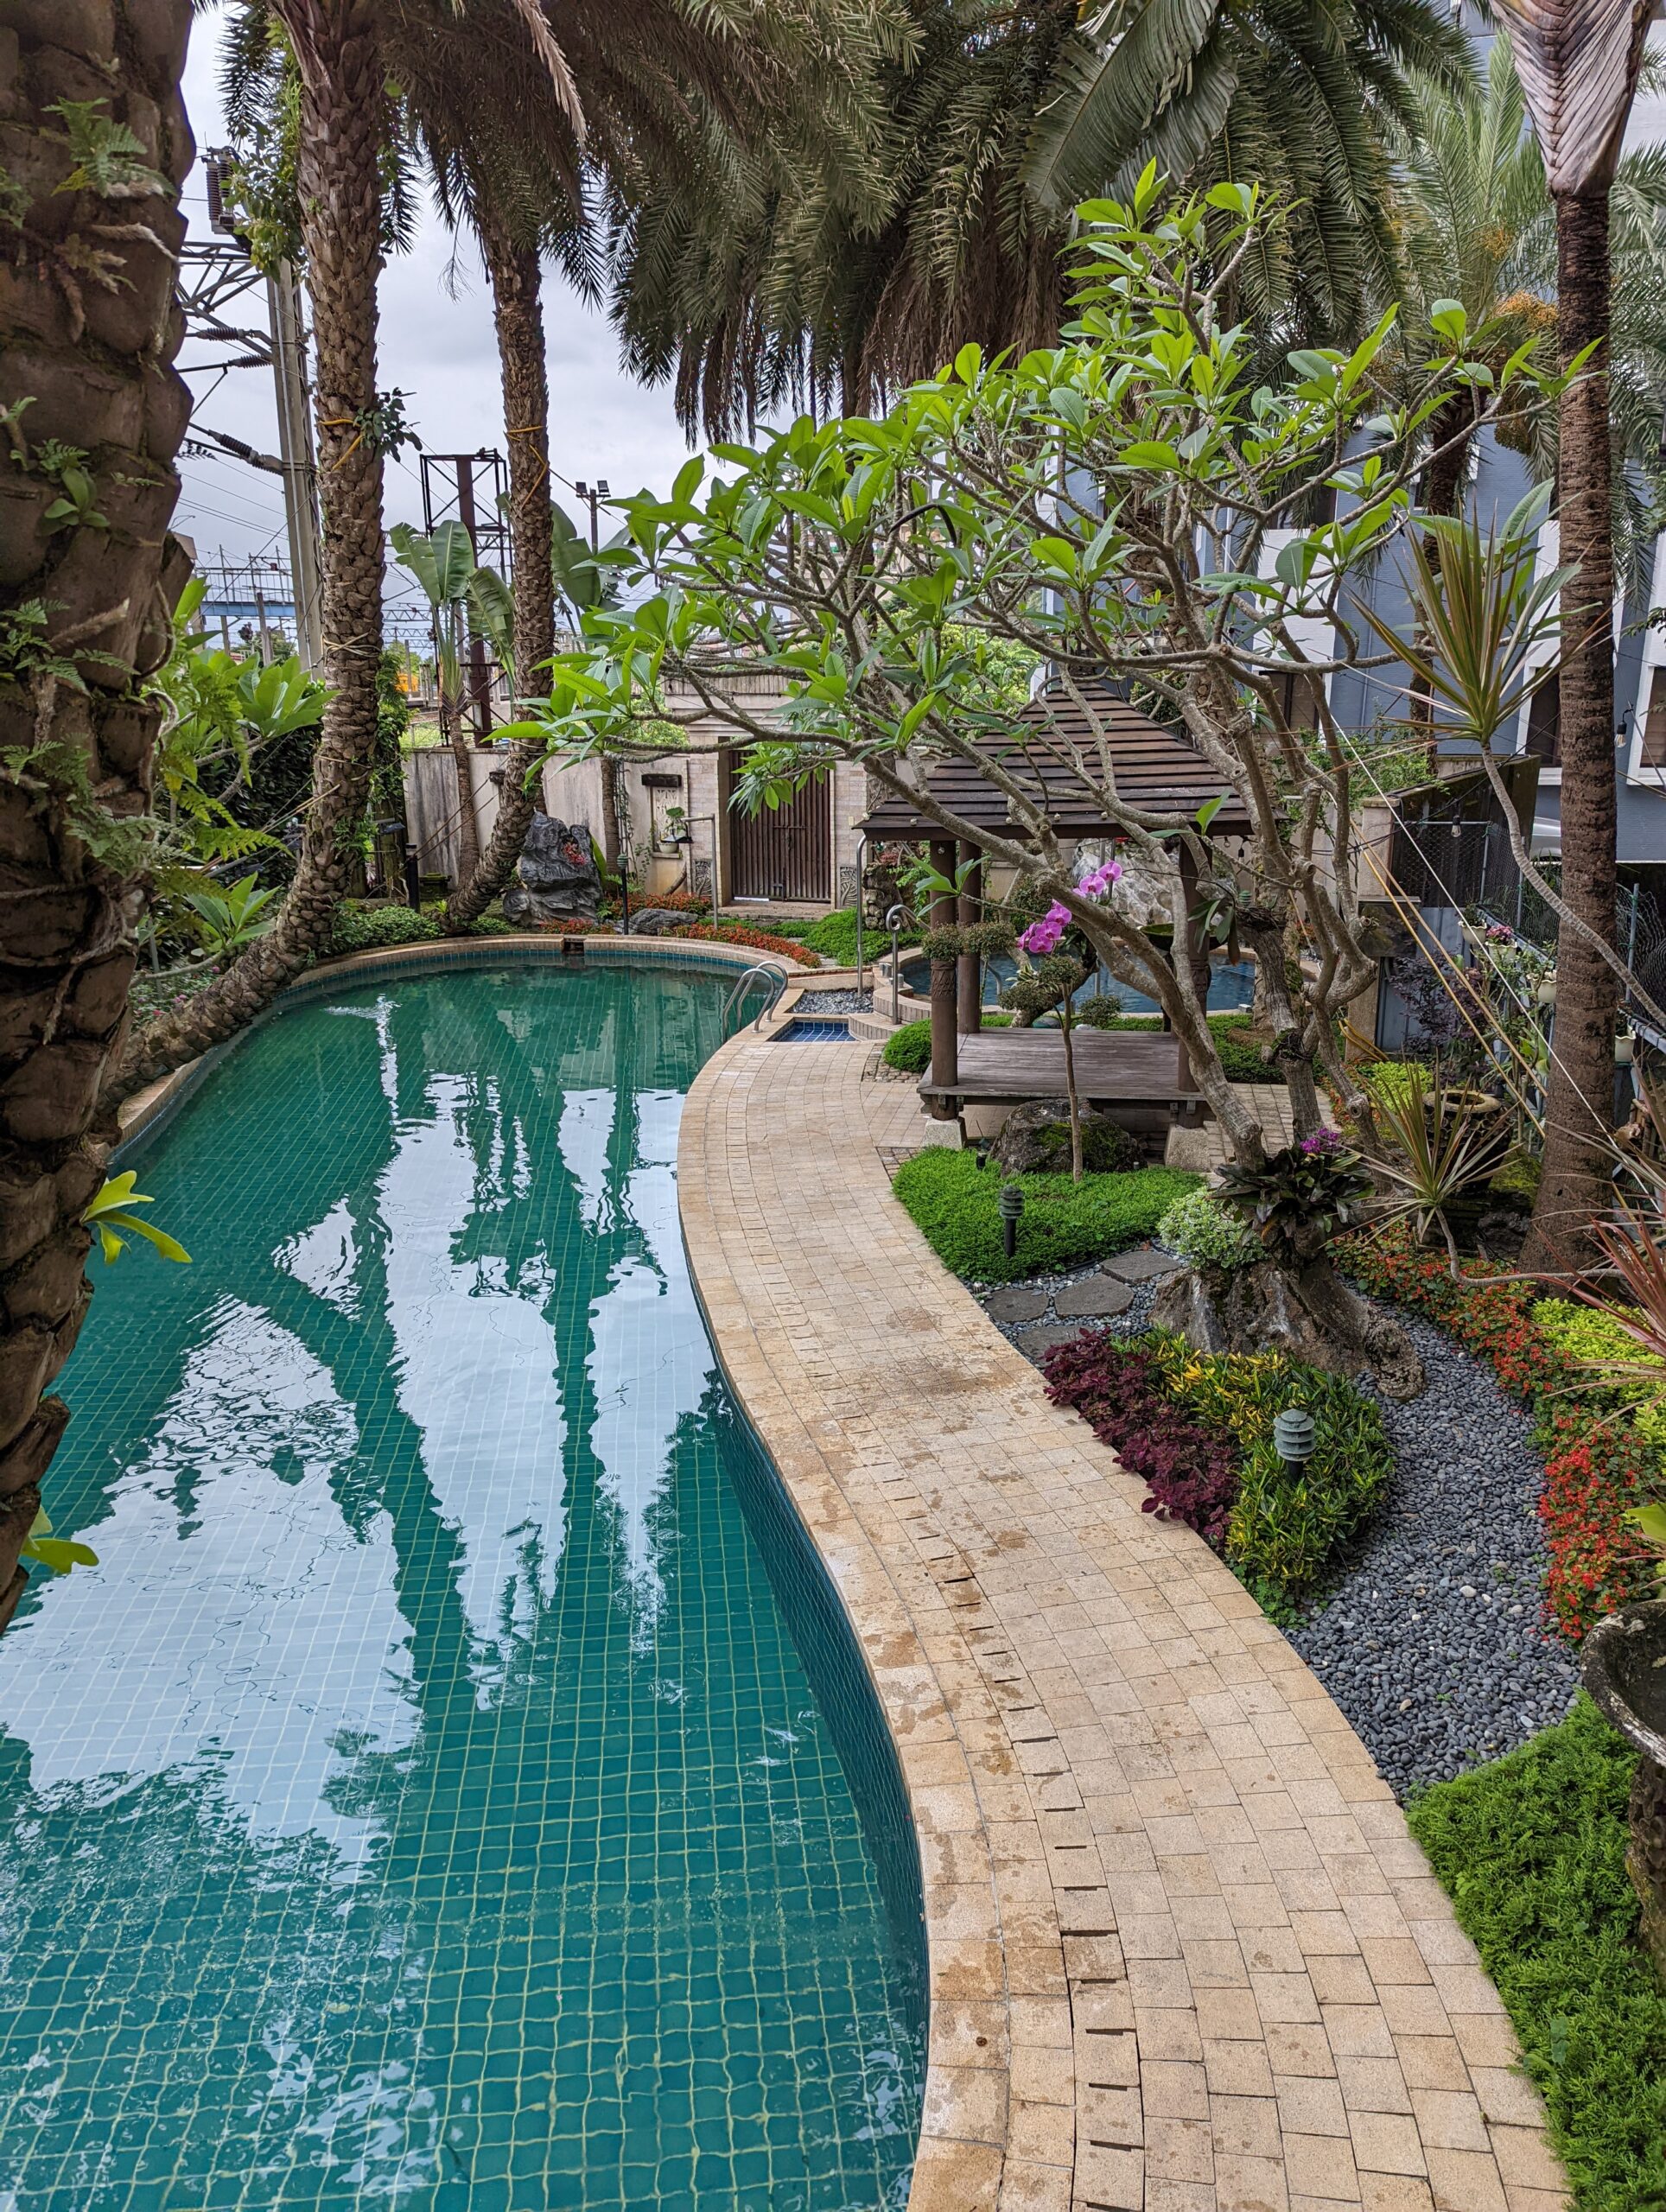 親子友善的日式溫泉套房-麗翔酒店礁溪館 @Rosa的秘密花園